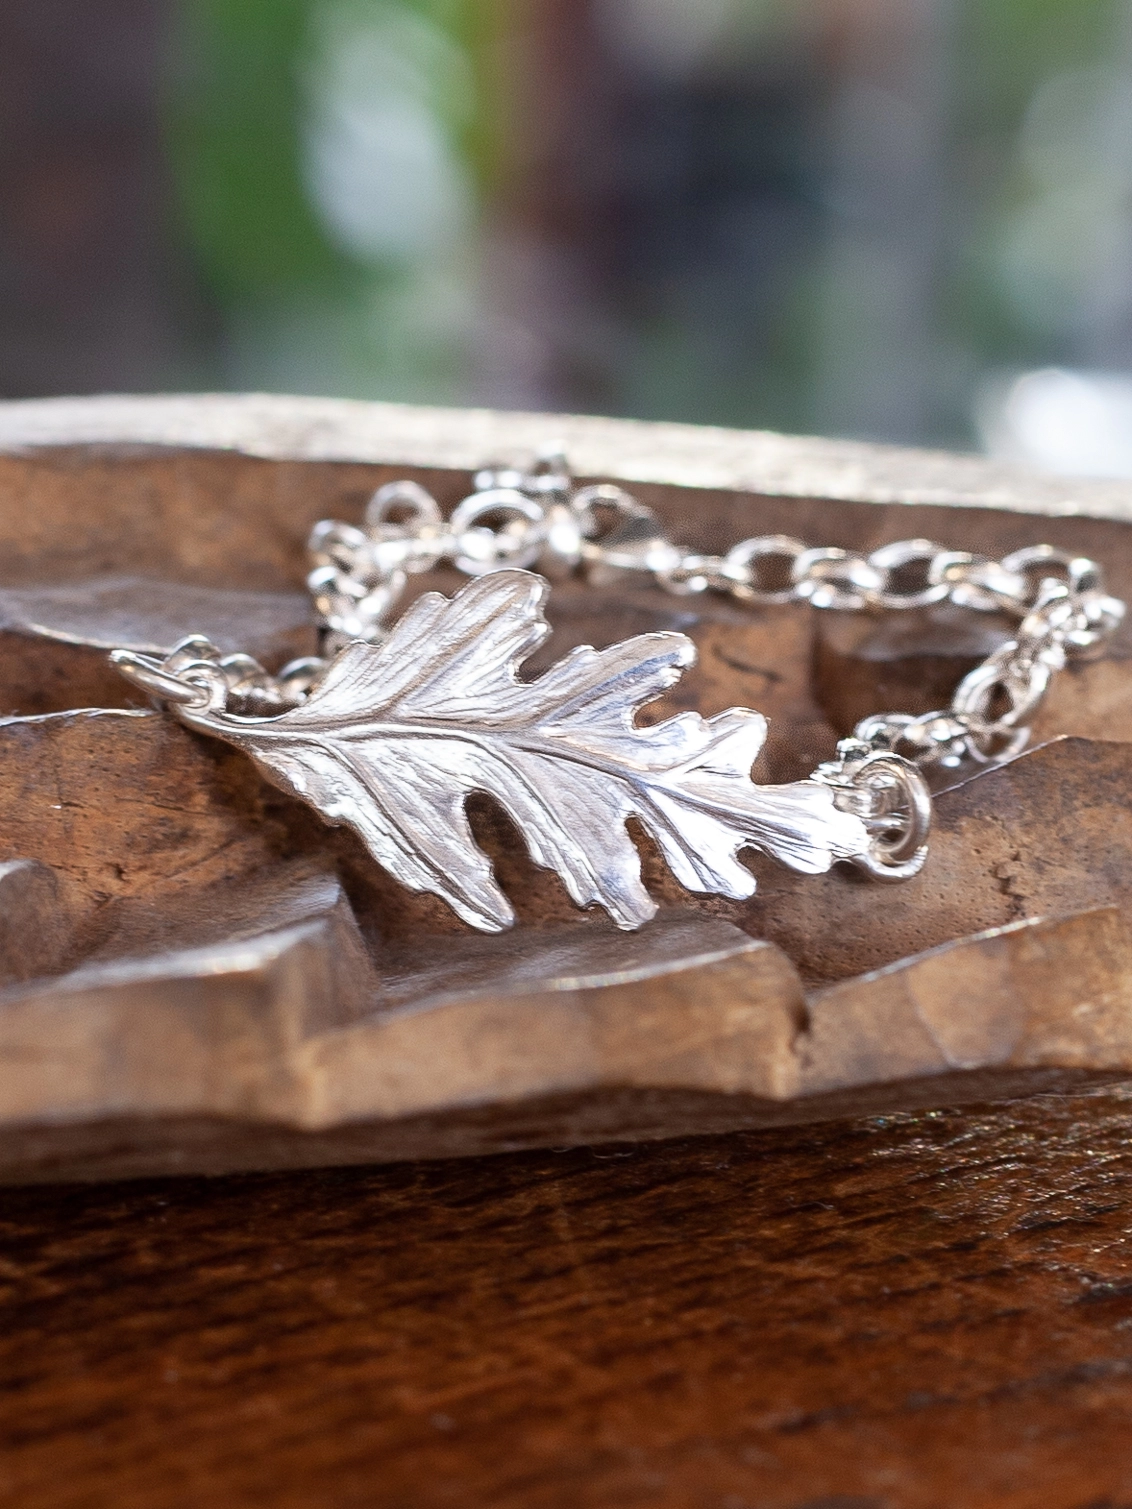 Oak leaf bracelet, nature jewelry, acorn charm - Botanical Bird Jewelry